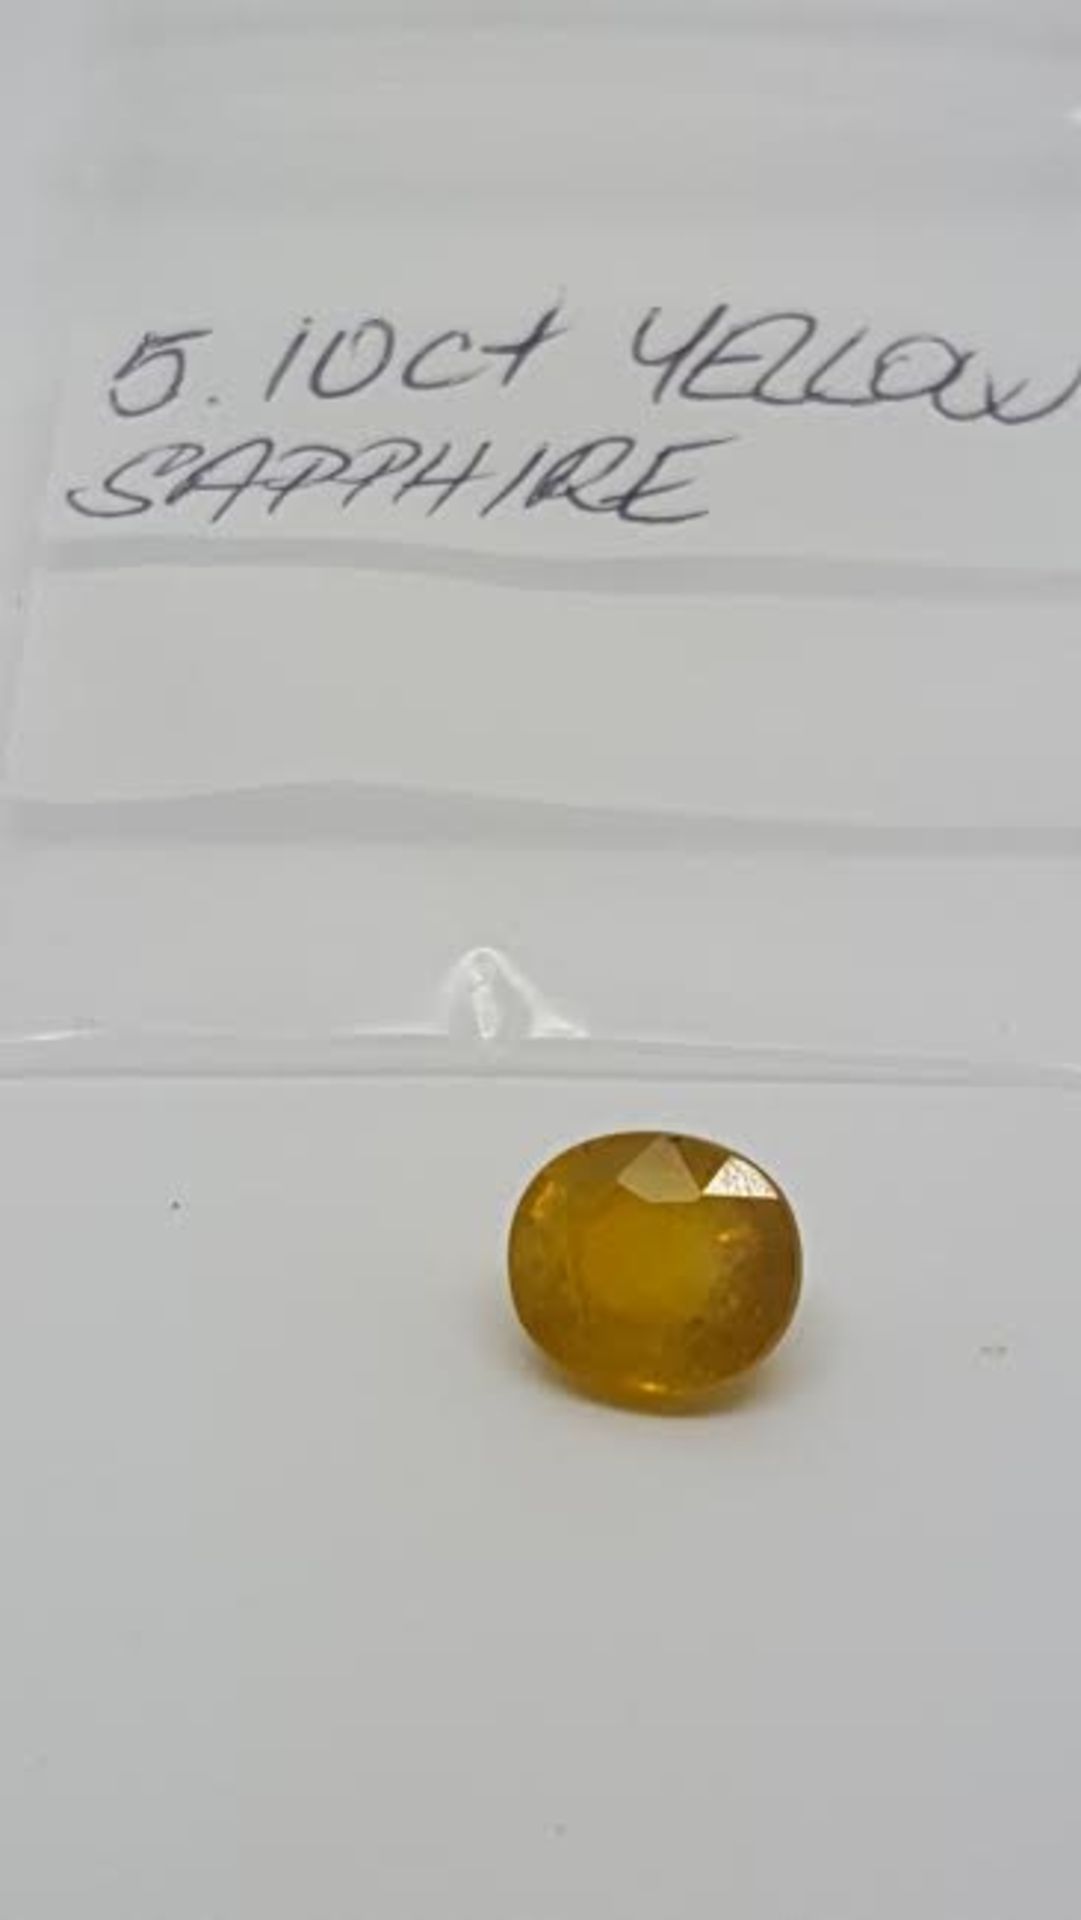 5.10 ct yellow sapphire